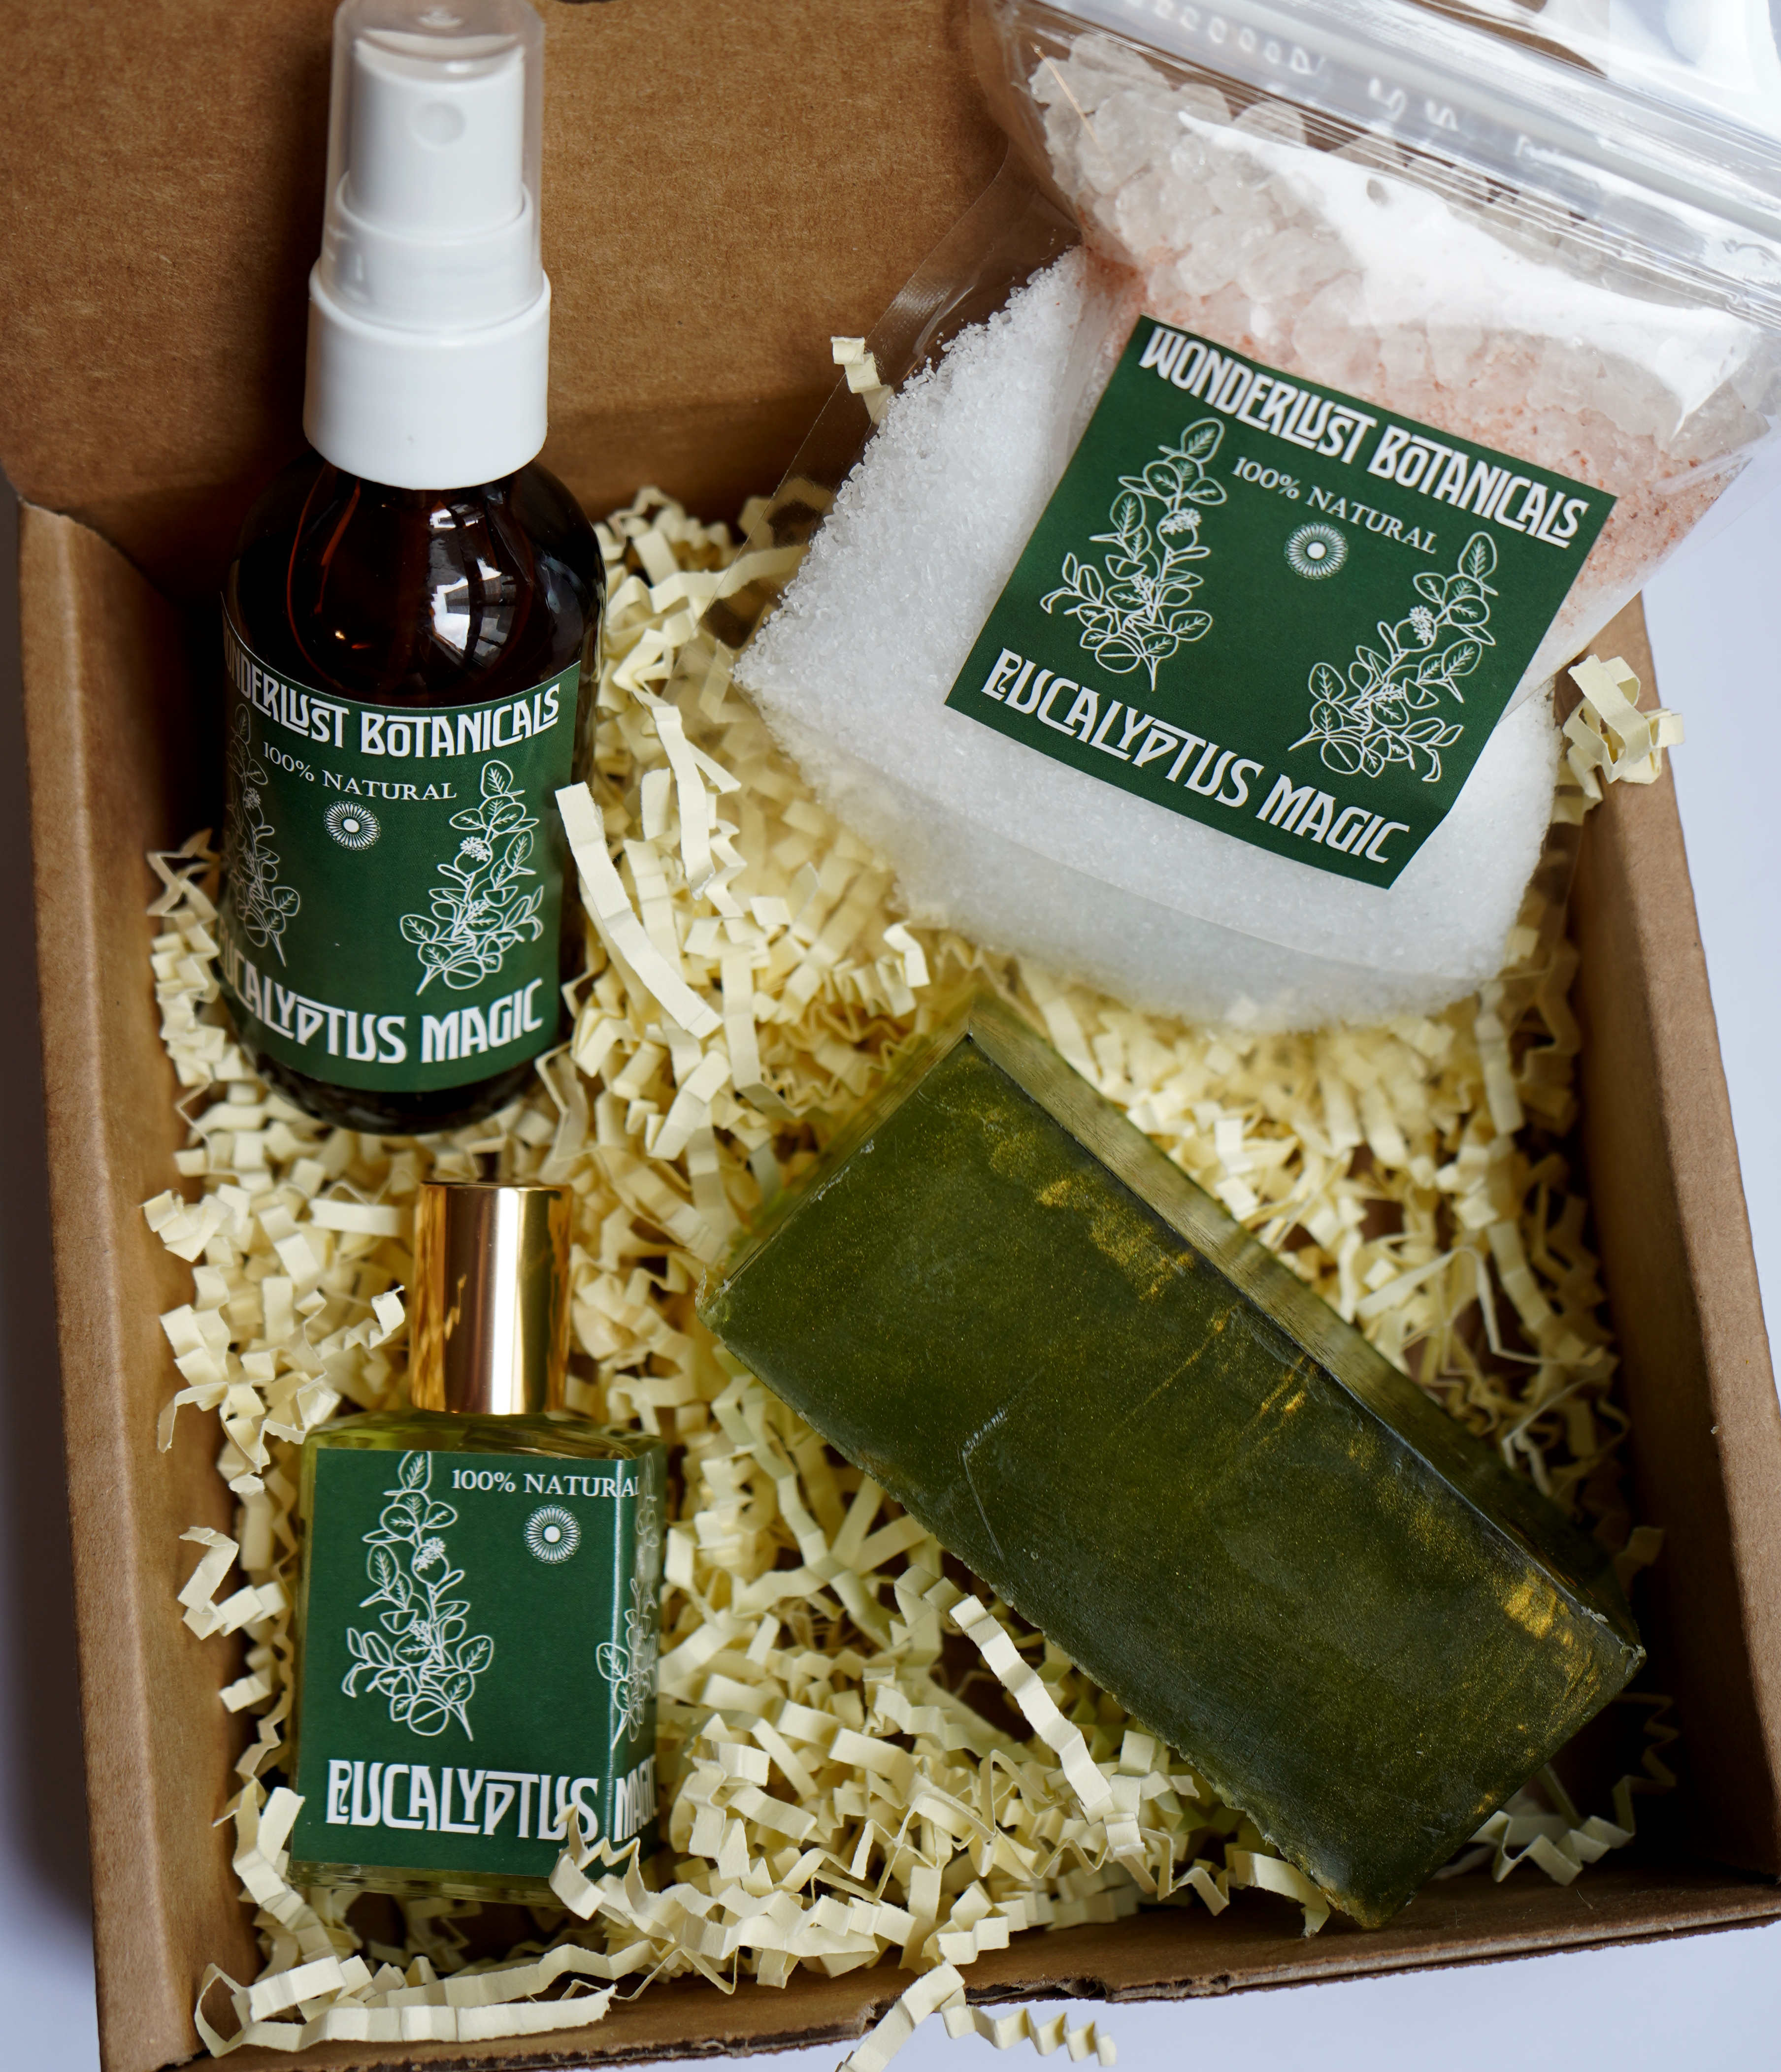 Eucalyptus aromatherapy spa kit Eucalyptus care package, Eucalyptus spa mist Eucalyptus essential oil kit free shipping, Eucalyptus gift set